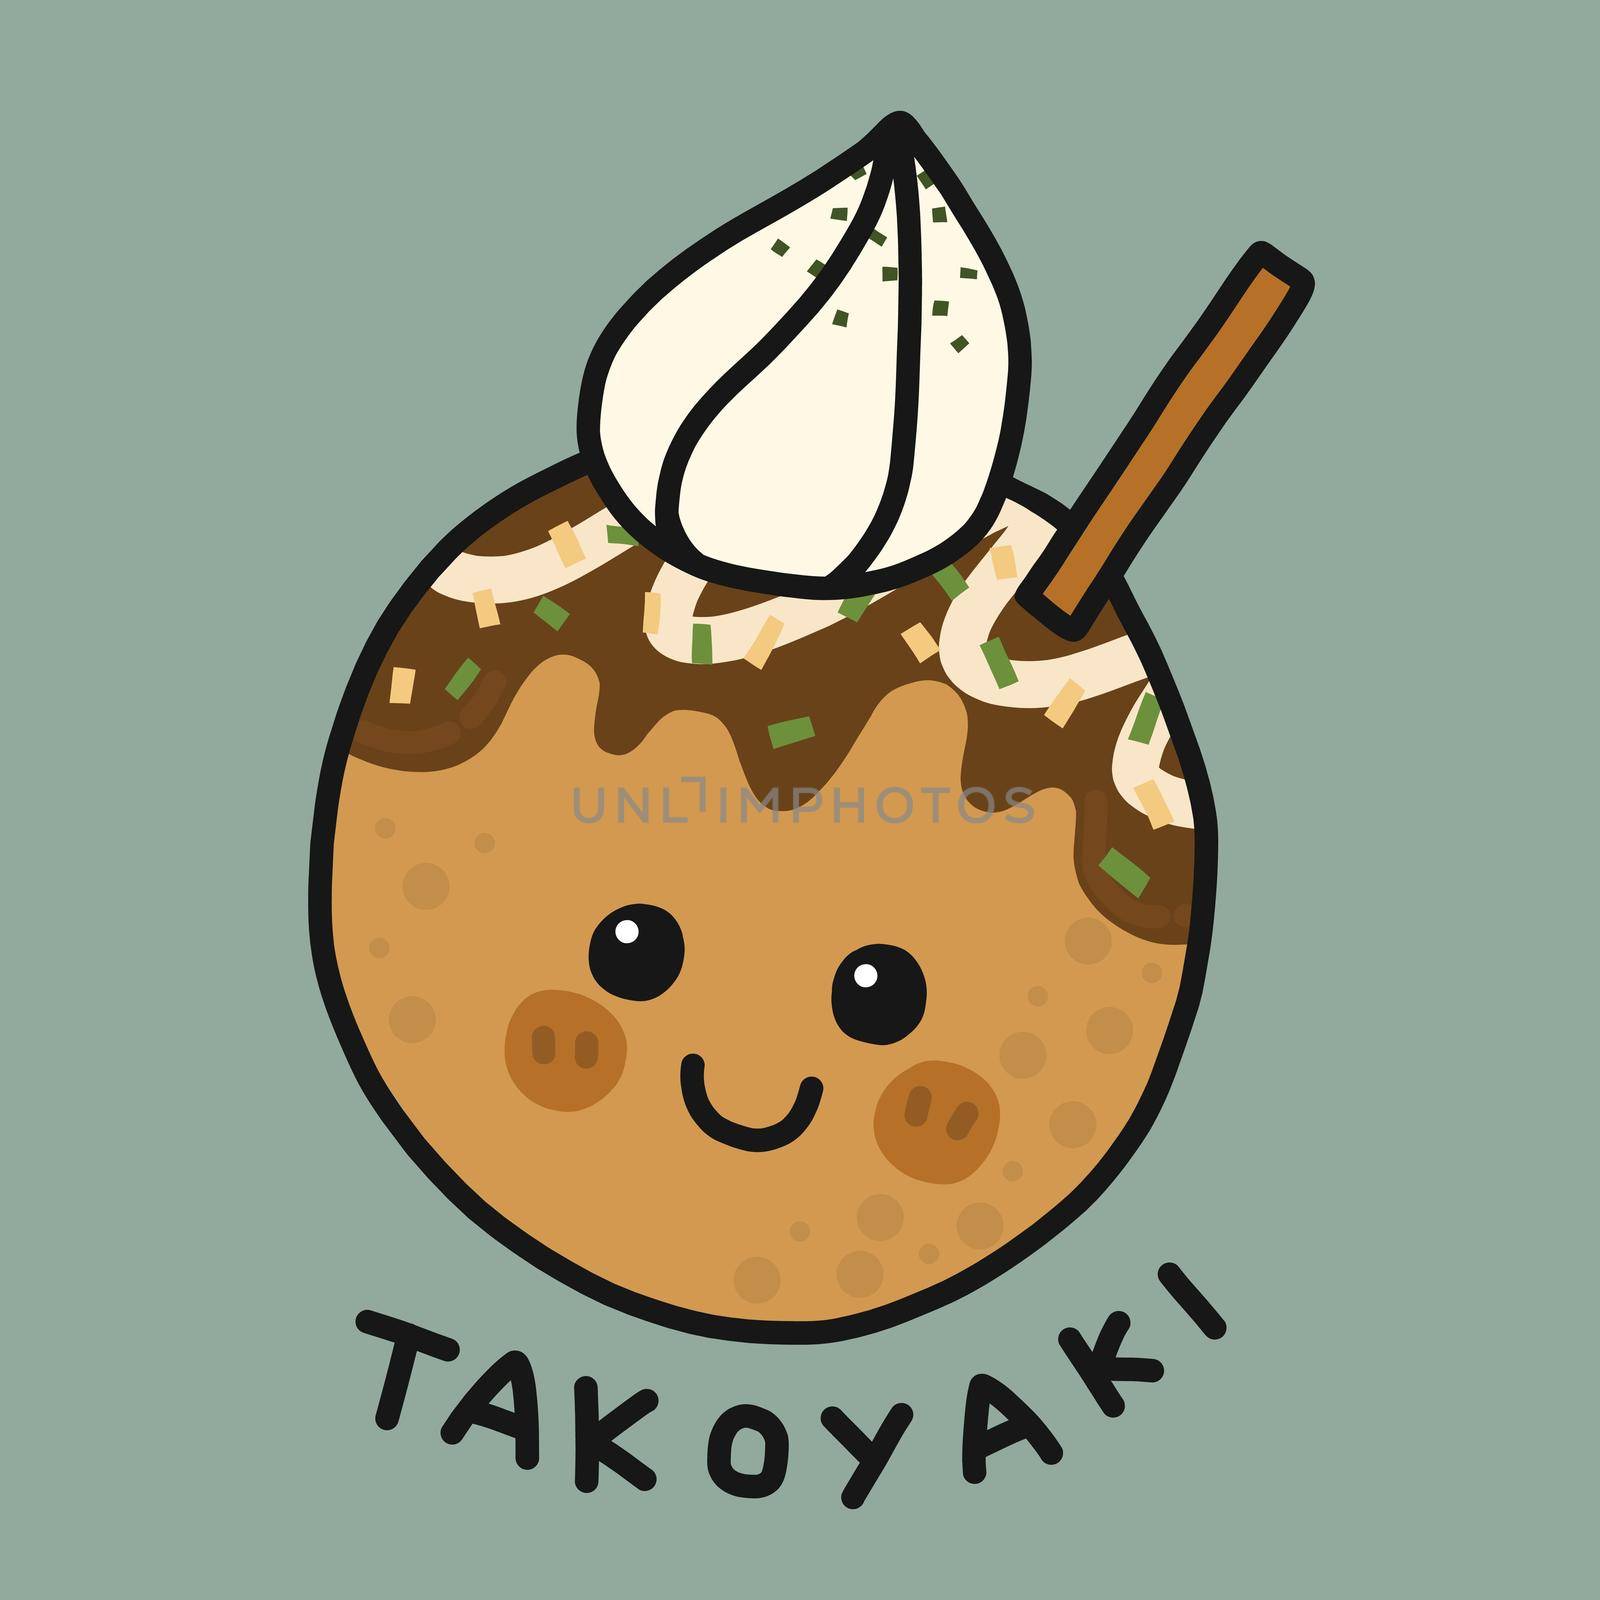 Takoyaki cartoon vector illustration by Yoopho